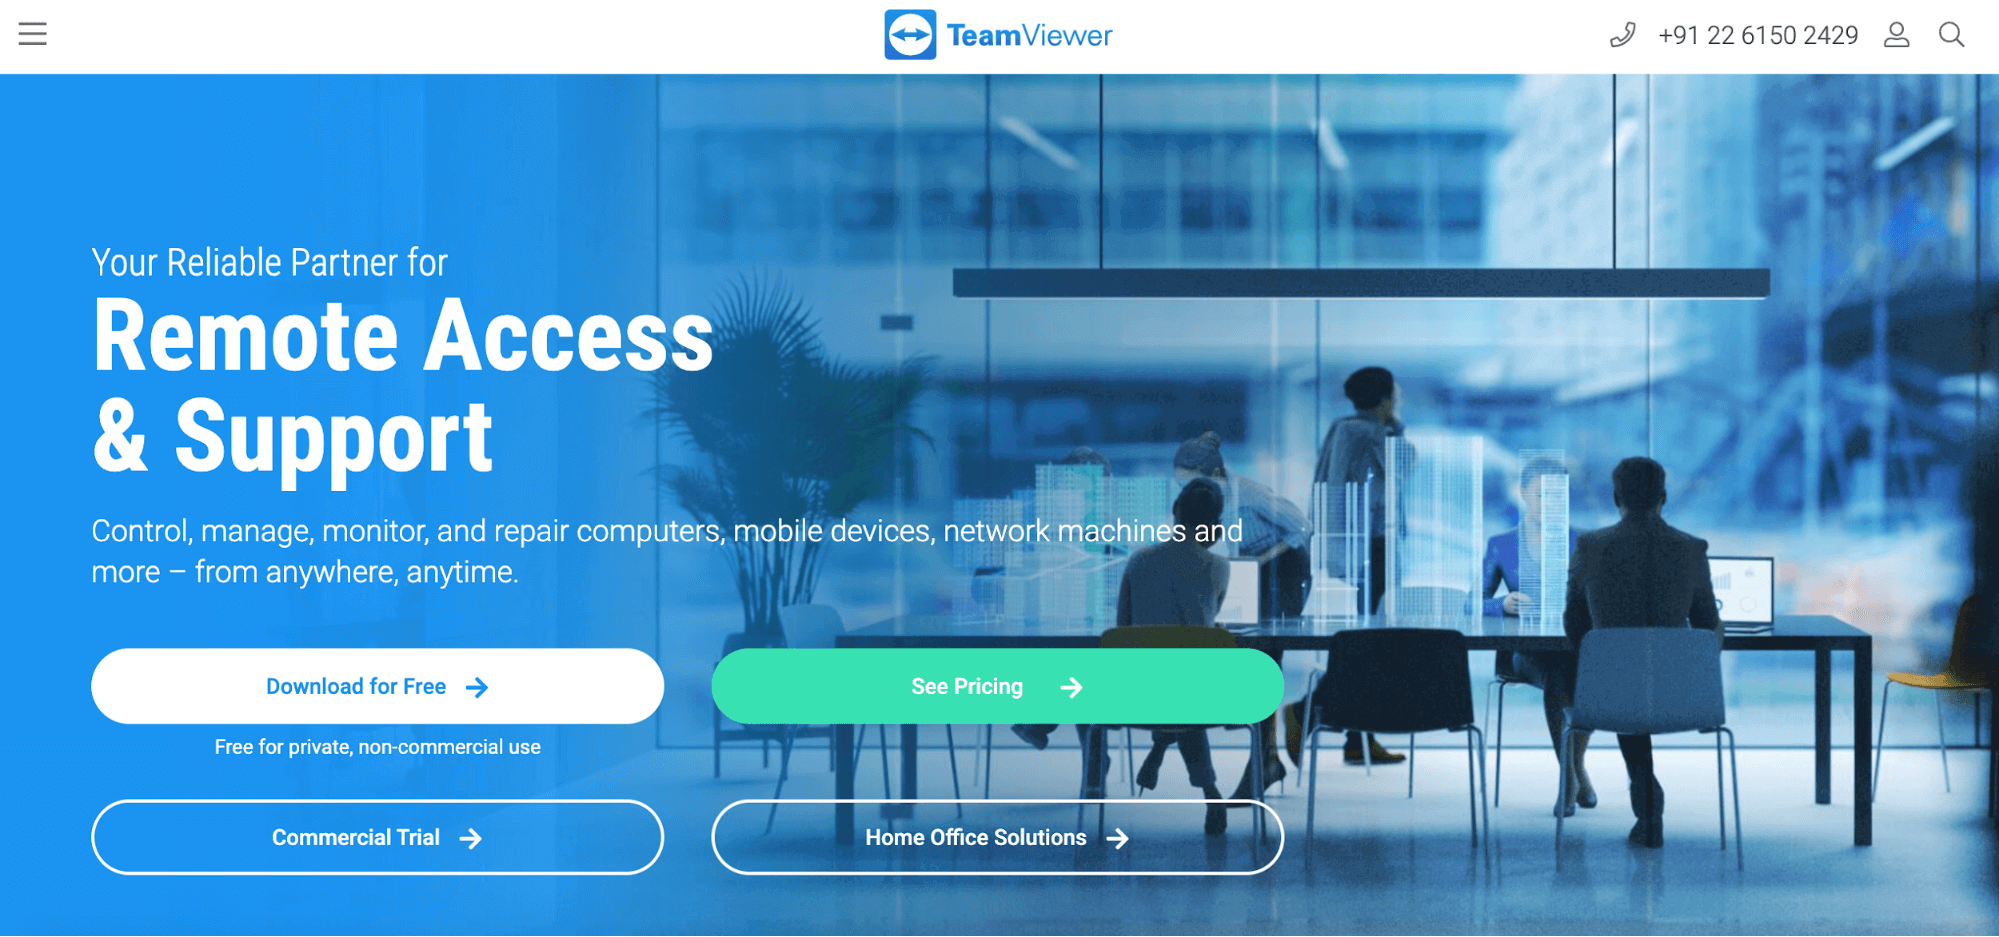 Teamviewer, a remote work tool